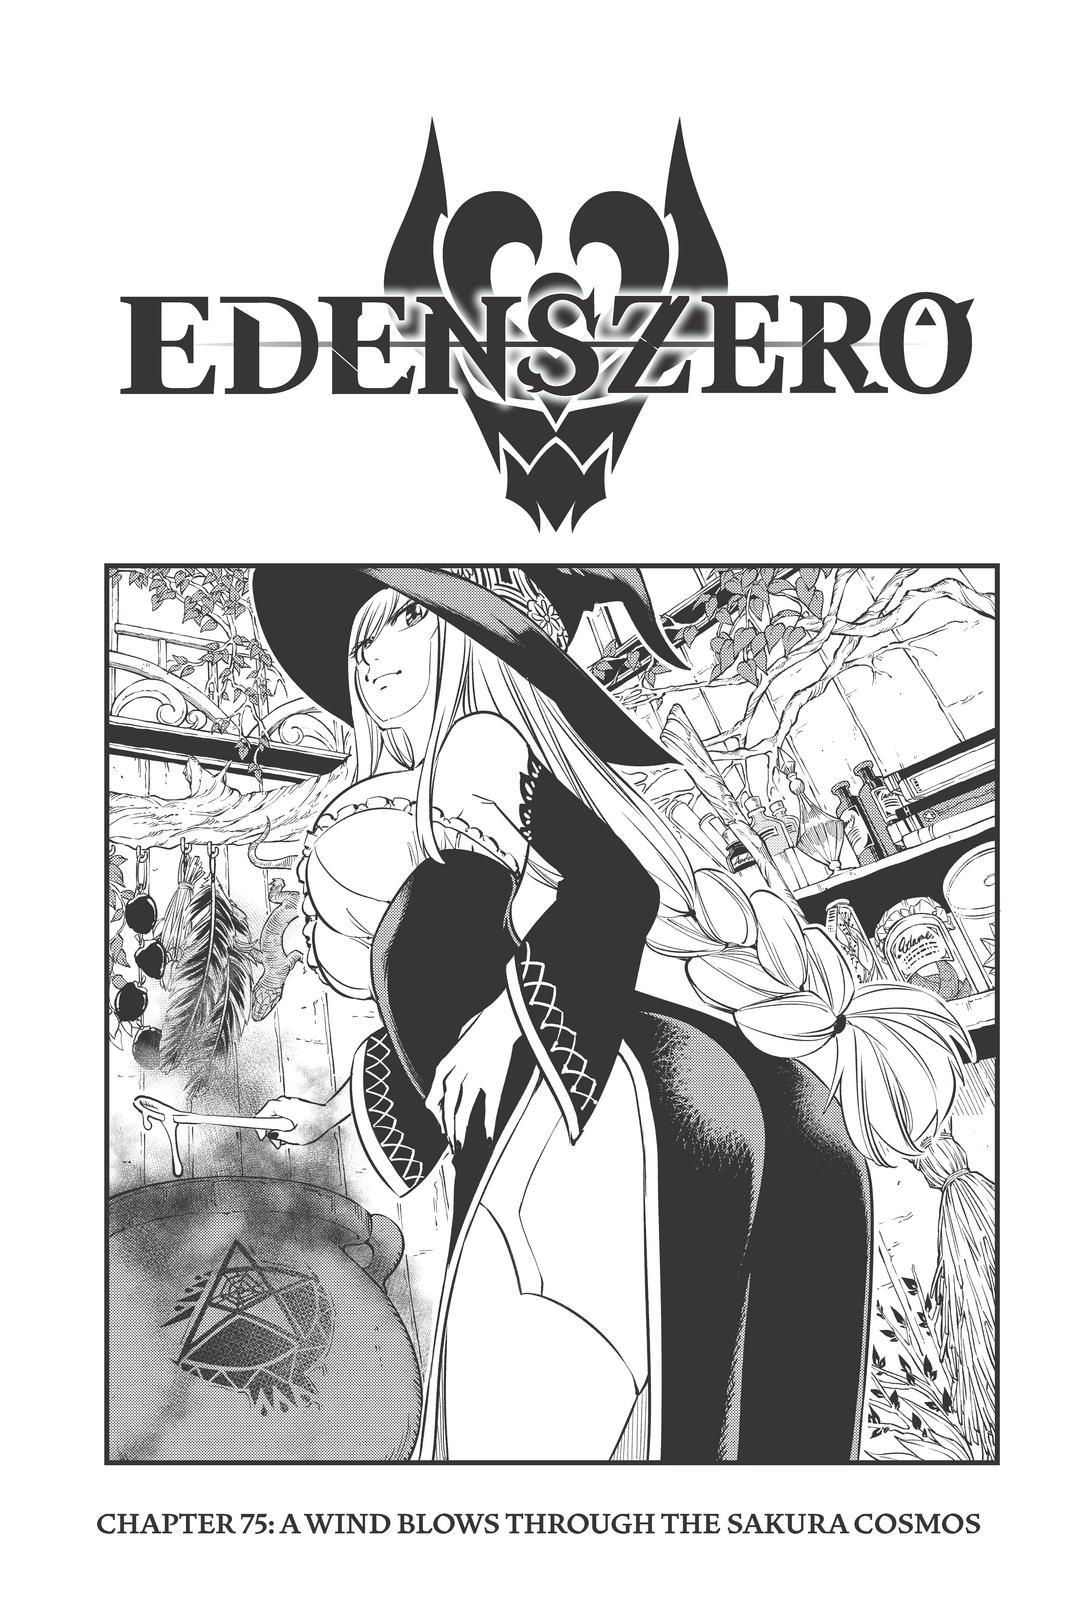 Edens Zero Ch. 75 A Wind Blows Through the Sakura Cosmos